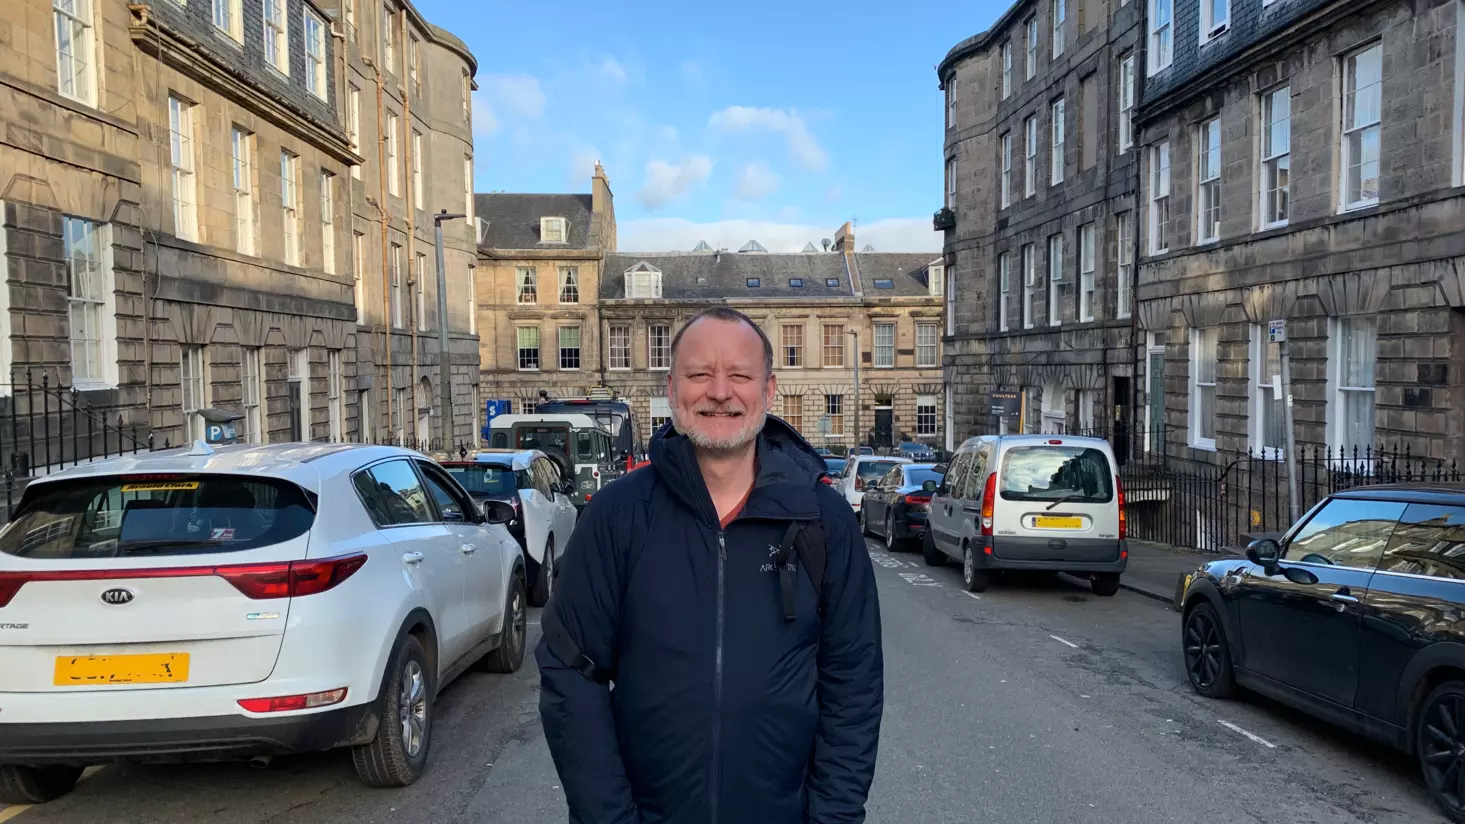 James in the historic Edinburgh